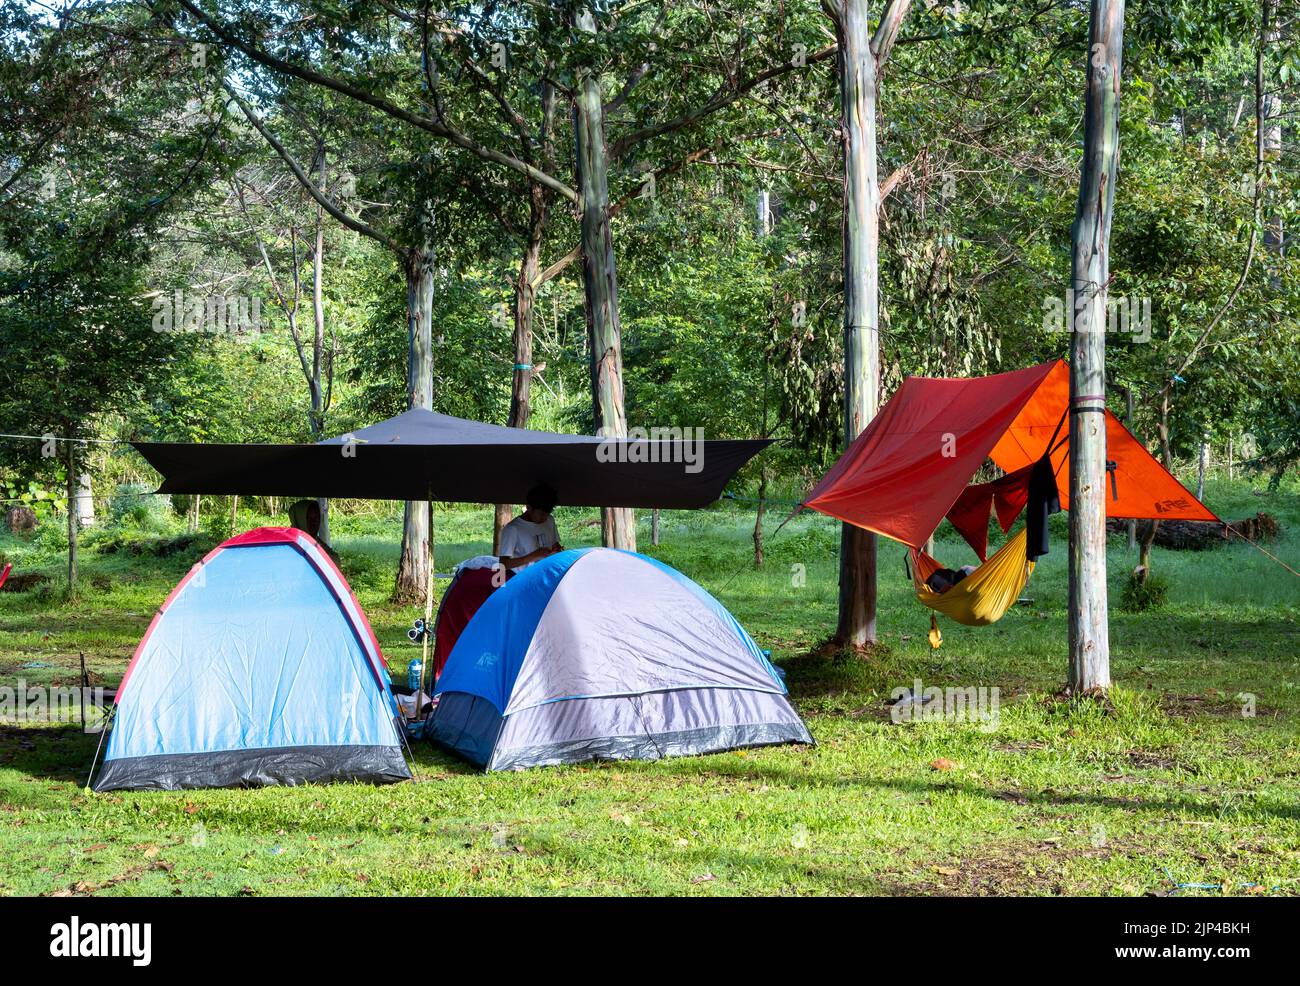 Einheimische campen auf dem Campingplatz. Lore Lindu National Park. Sulawesi, Indonesien. Stockfoto